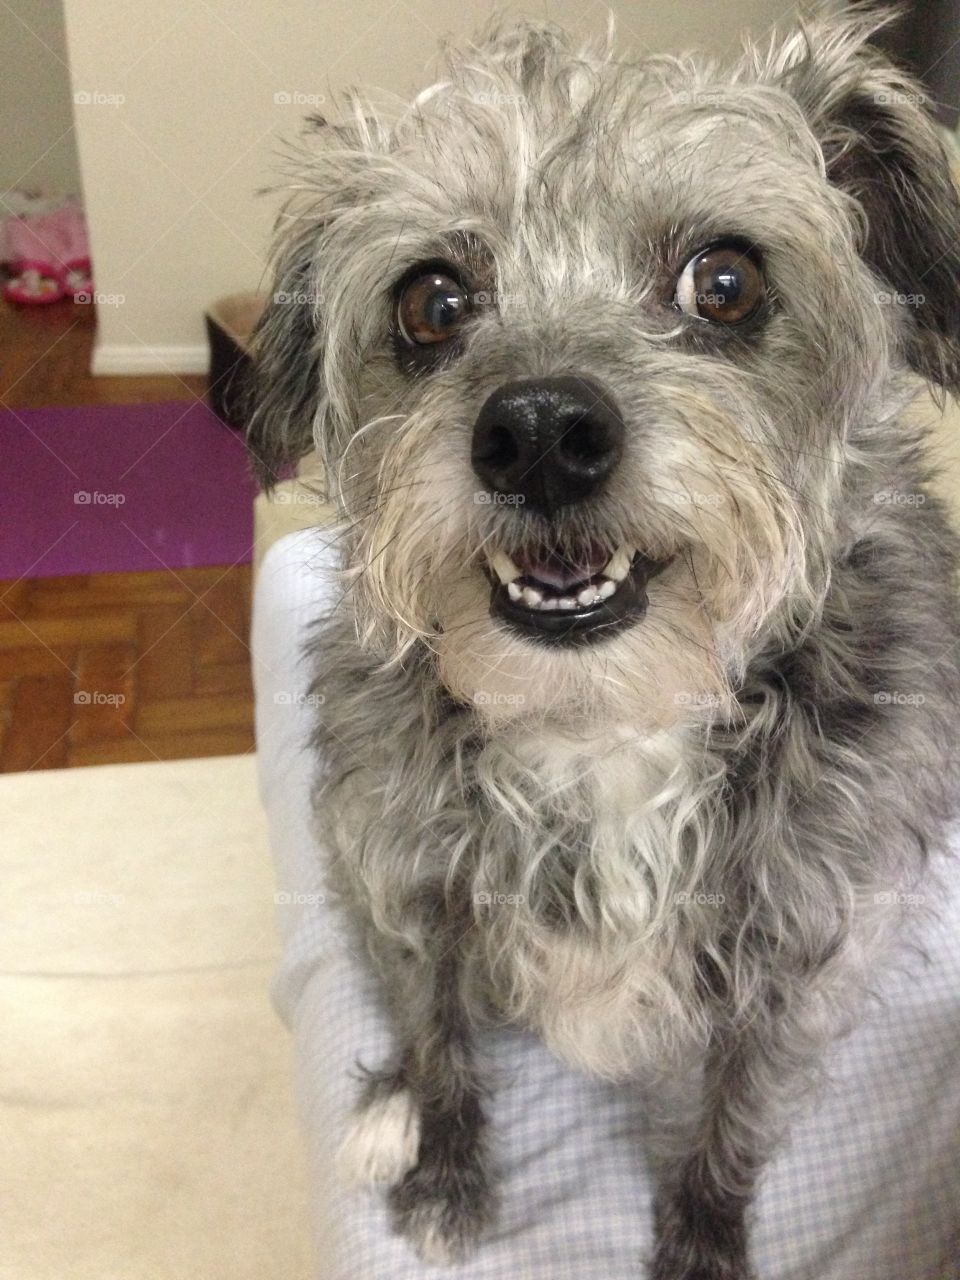 Rescued dog smiling 